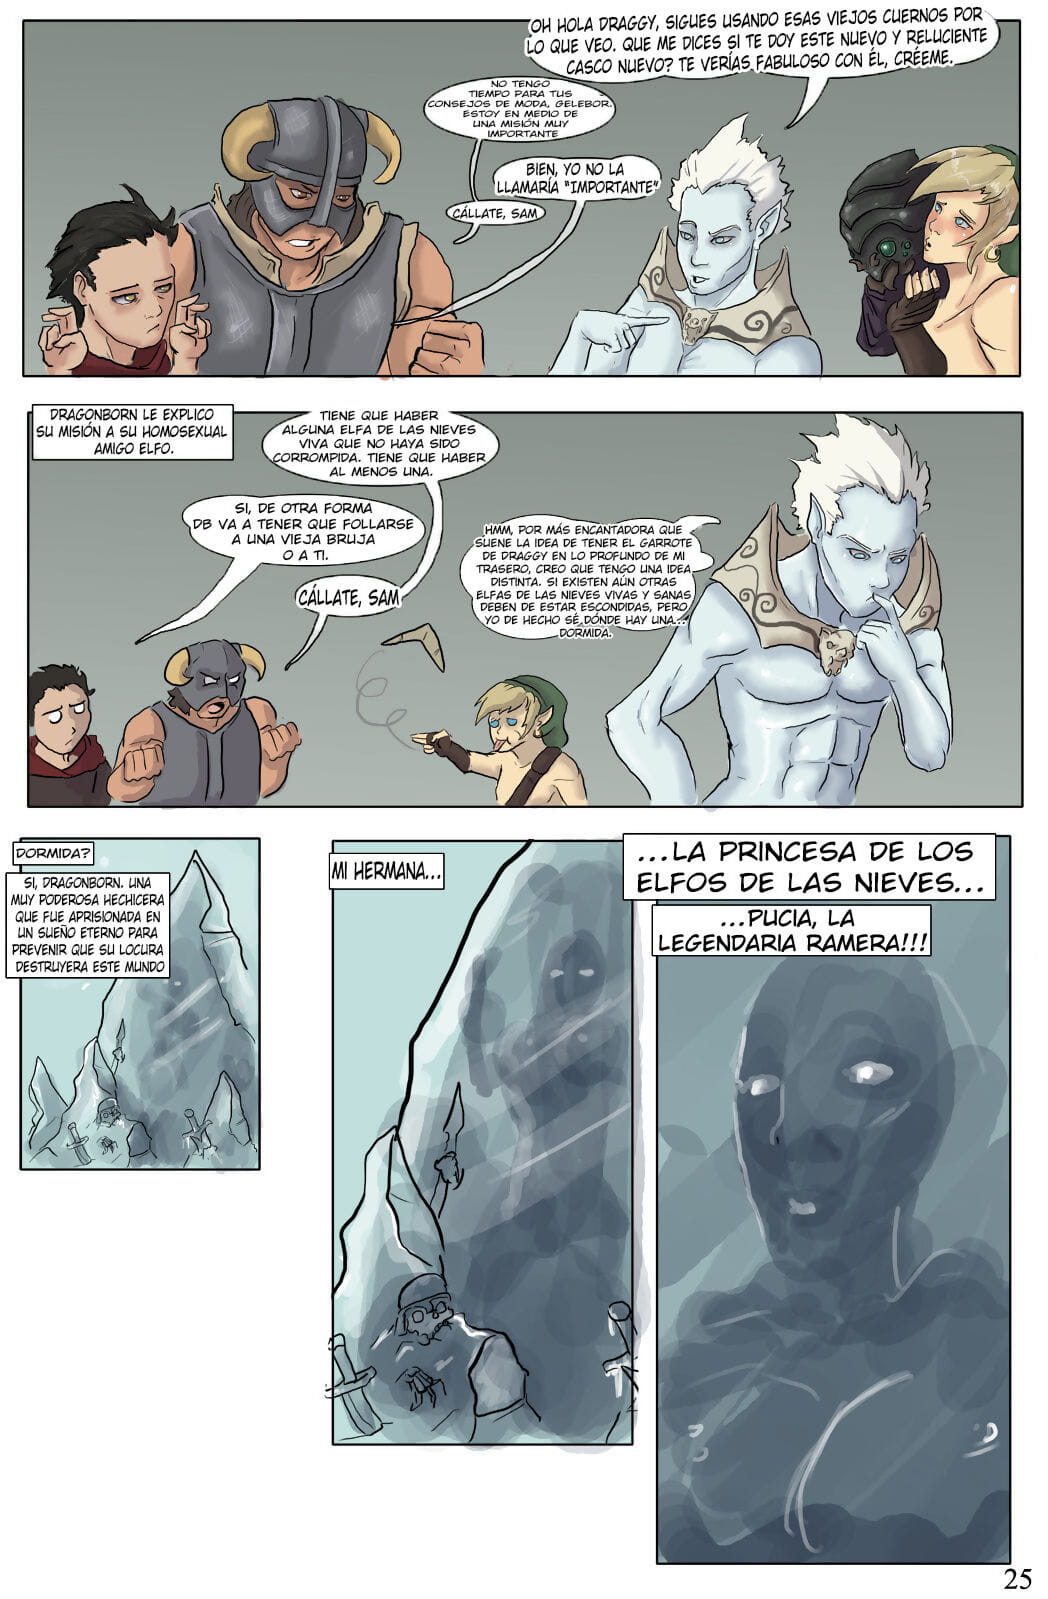 el devenir de dragonborn PART 3 page 1